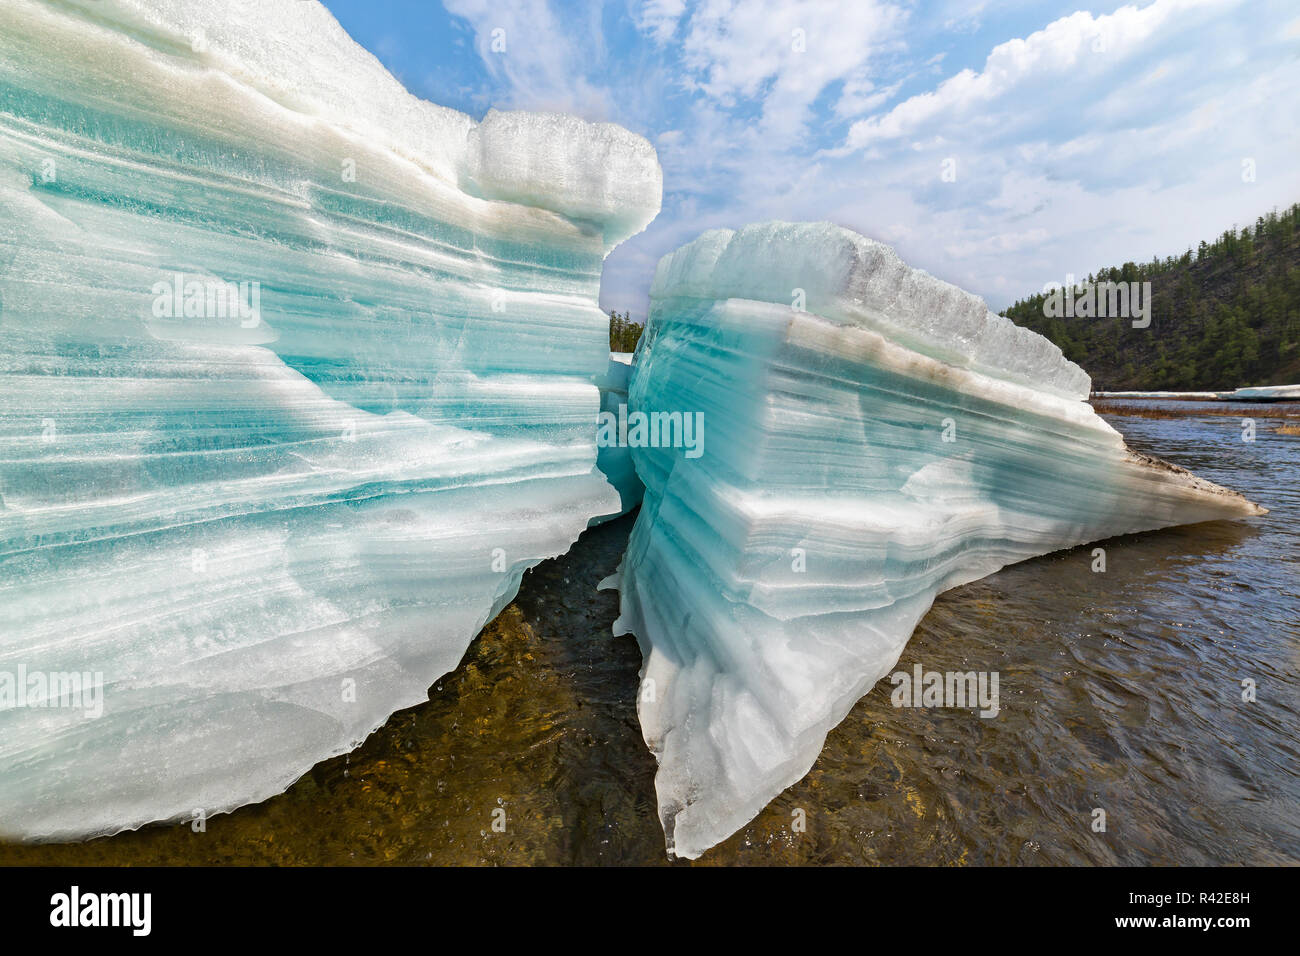 Turquoise de glace sur l'eau en couches dans le sud de la Iakoutie, Russie Banque D'Images